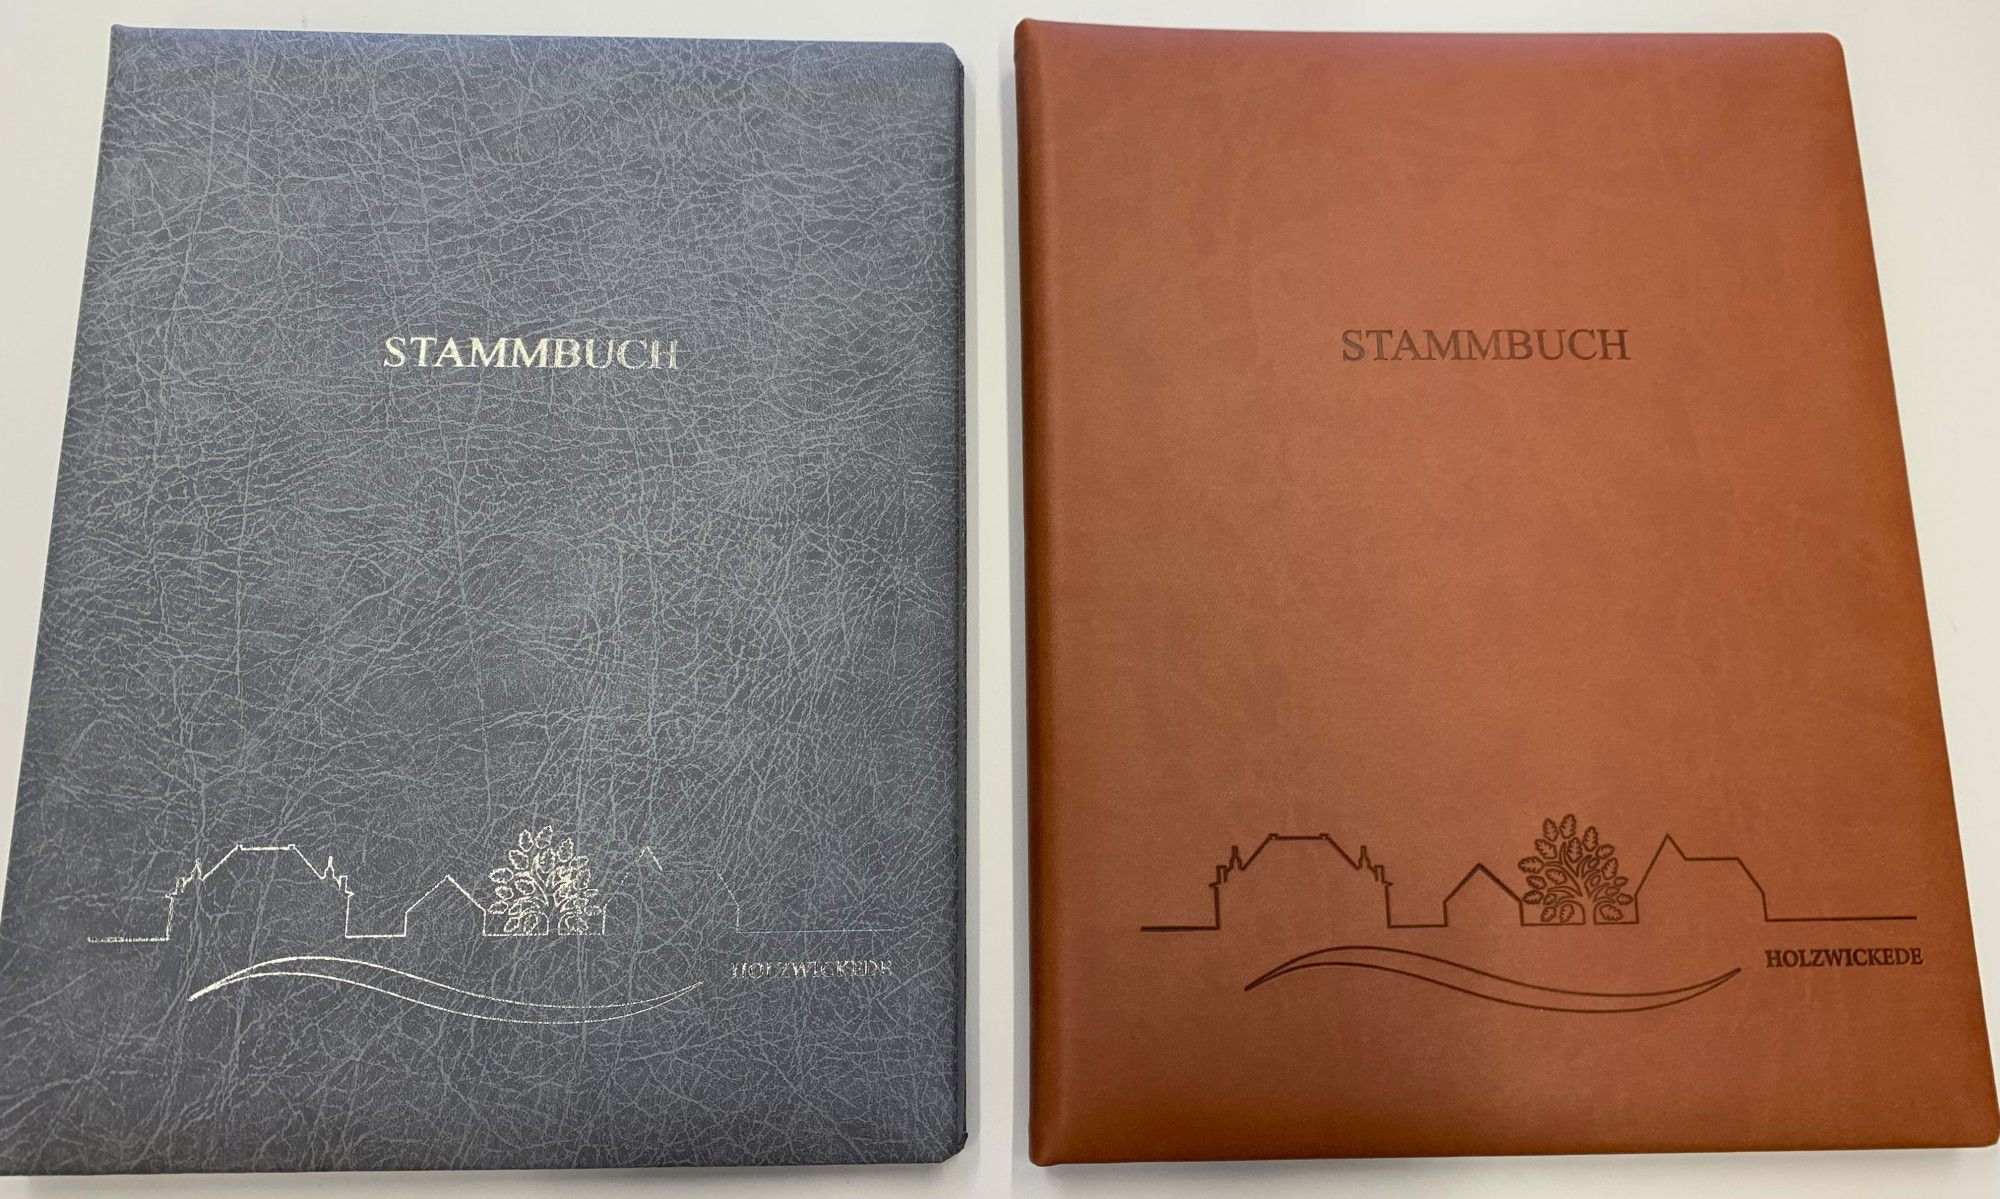 Die neuen Stammbücher sind jetzt auch mit einer Skyline der Gemeinde Holzwickede und in zwei Farben erhältlich. (Foto: Gemeinde Holzwickede)